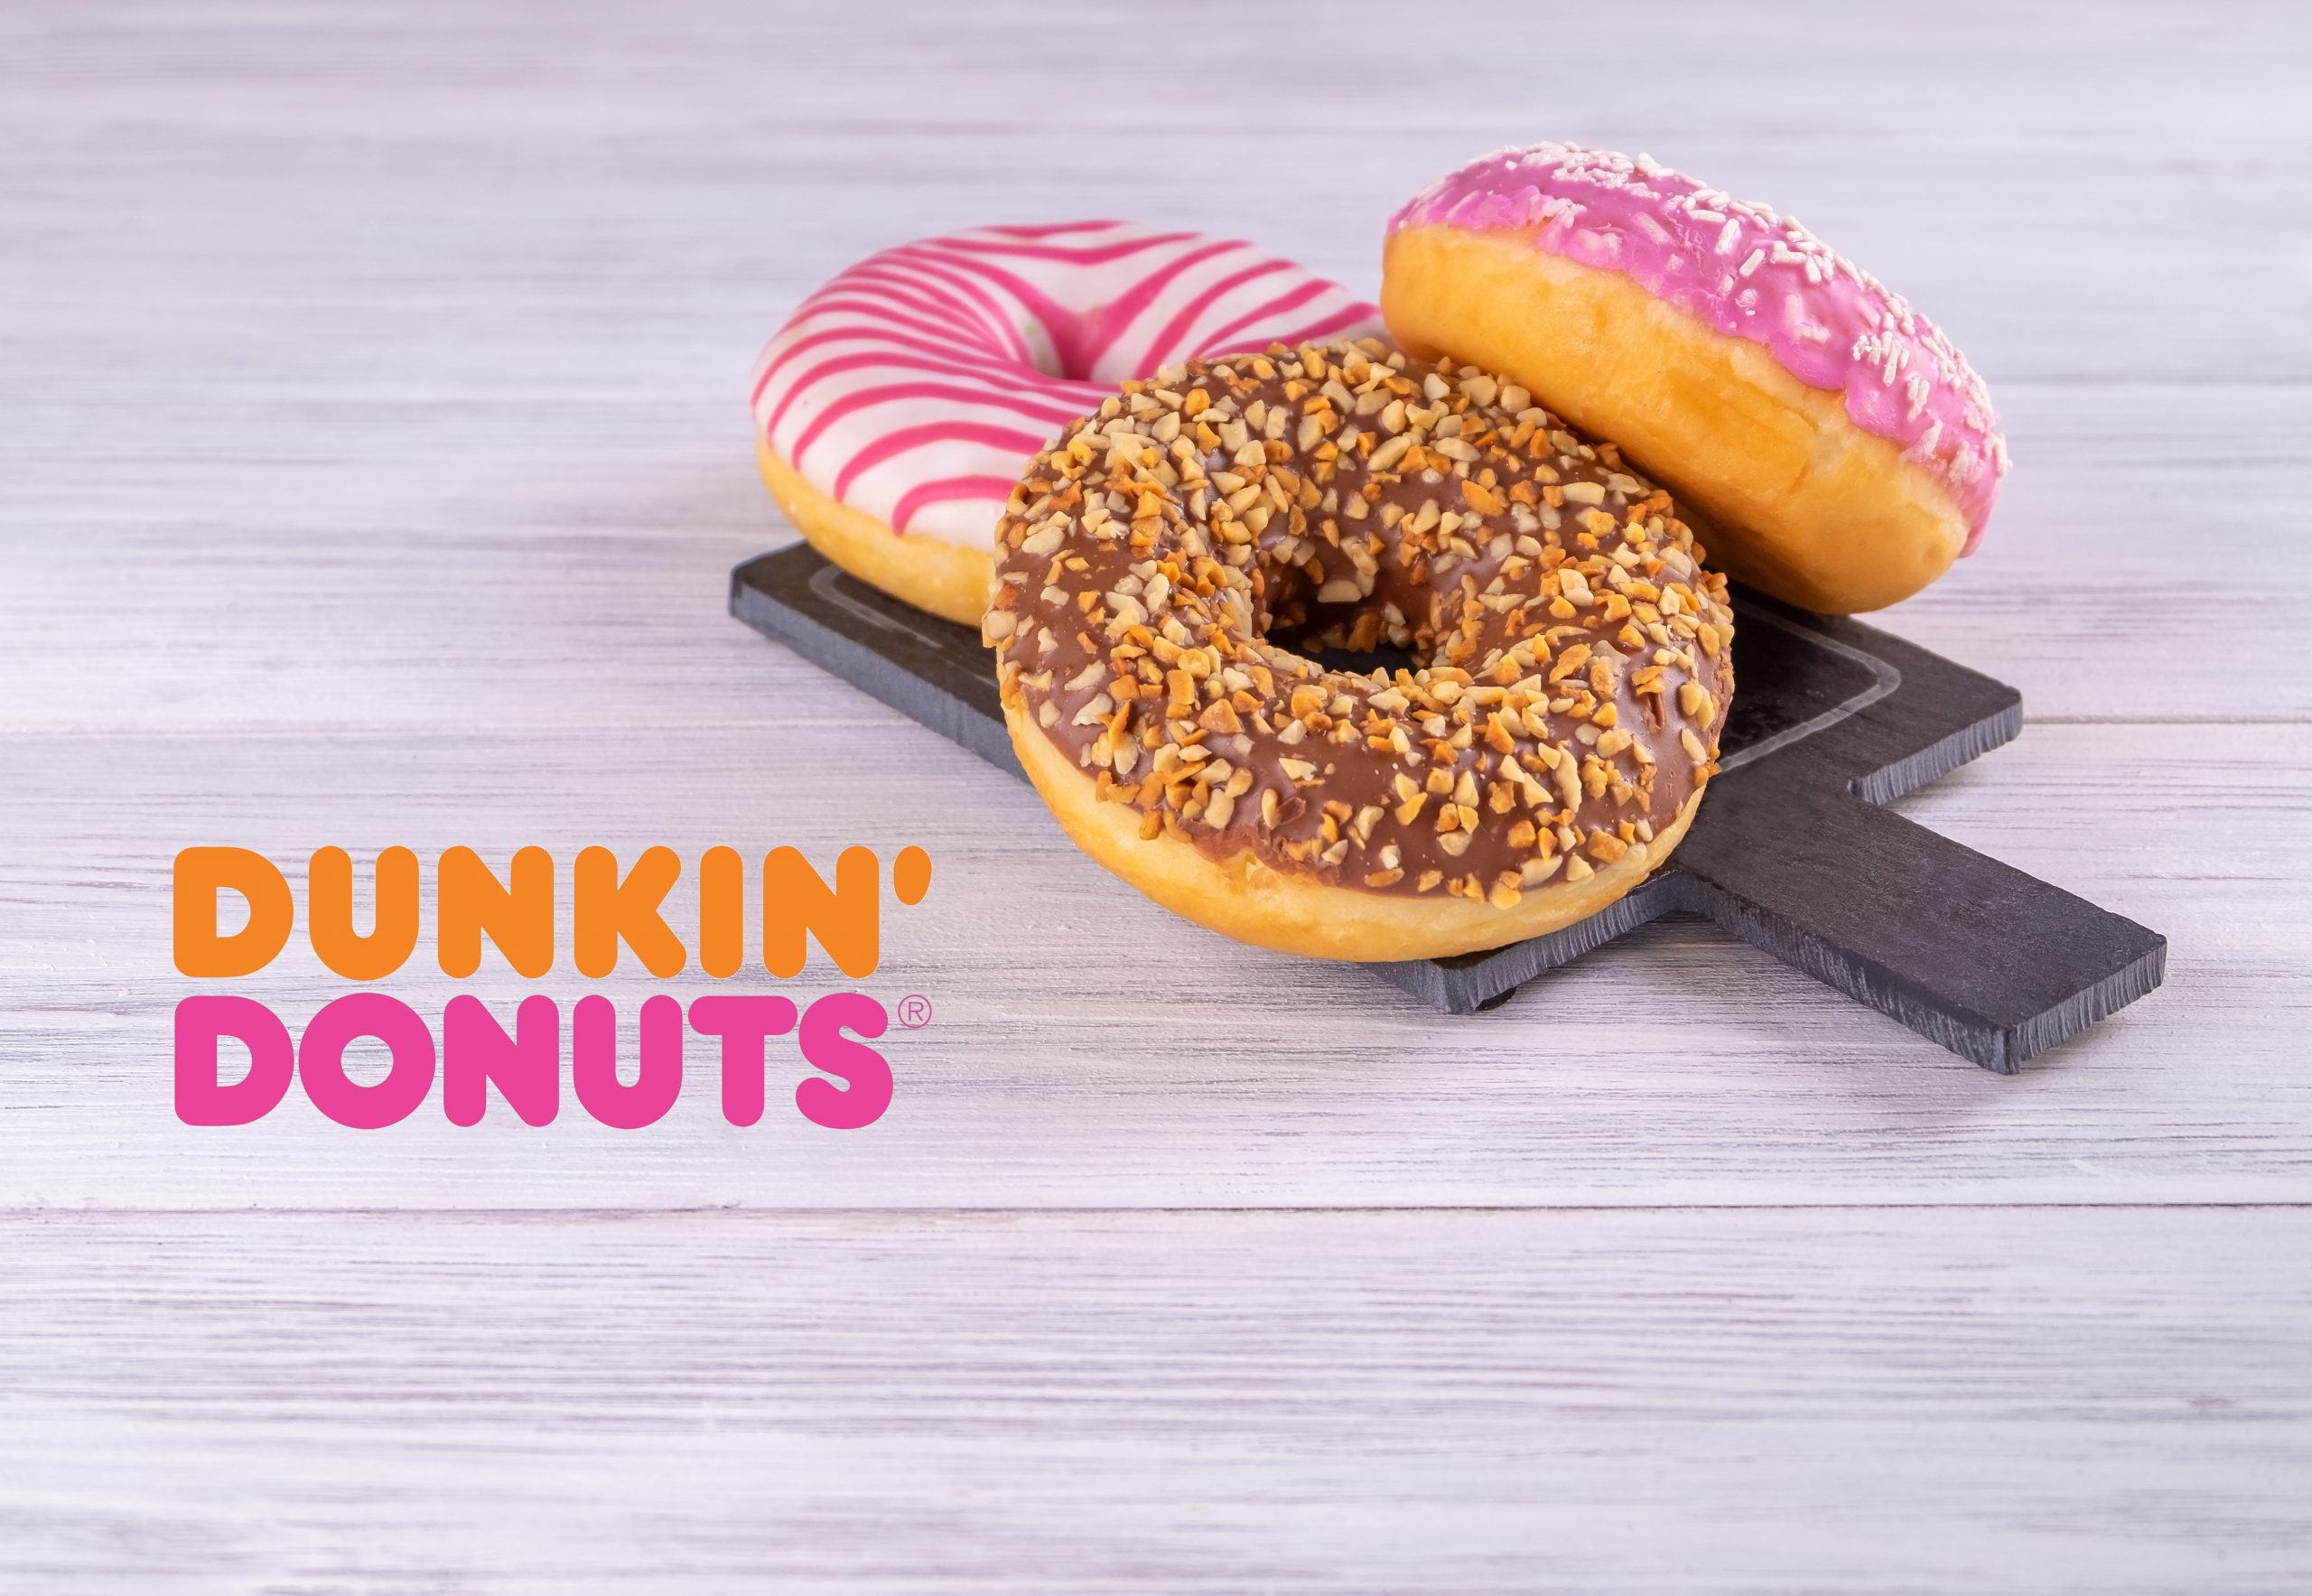 Dunkin Donuts – Brand Lancierung im Coop